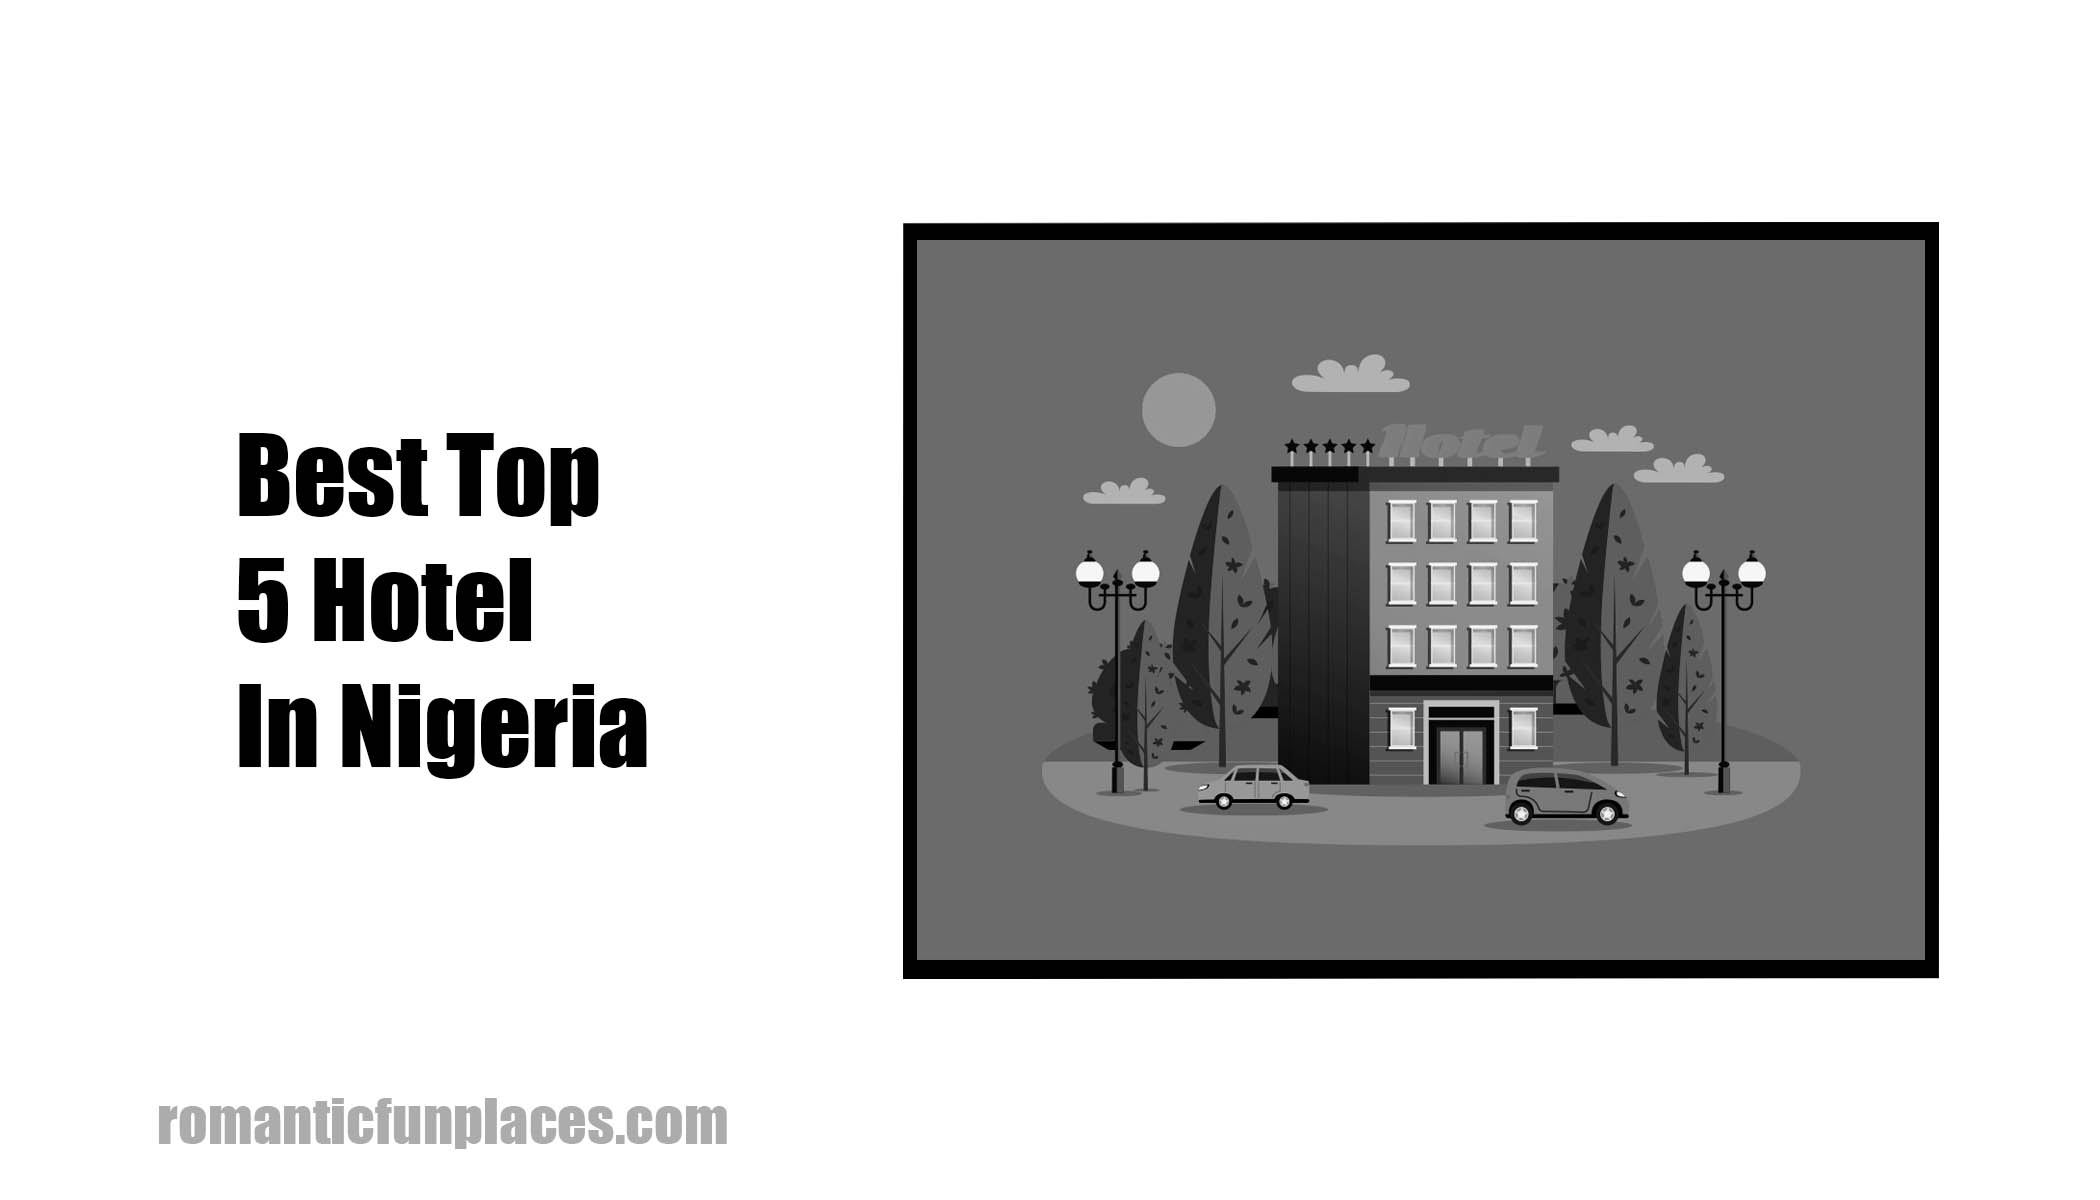 Best Top 5 Hotel In Nigeria